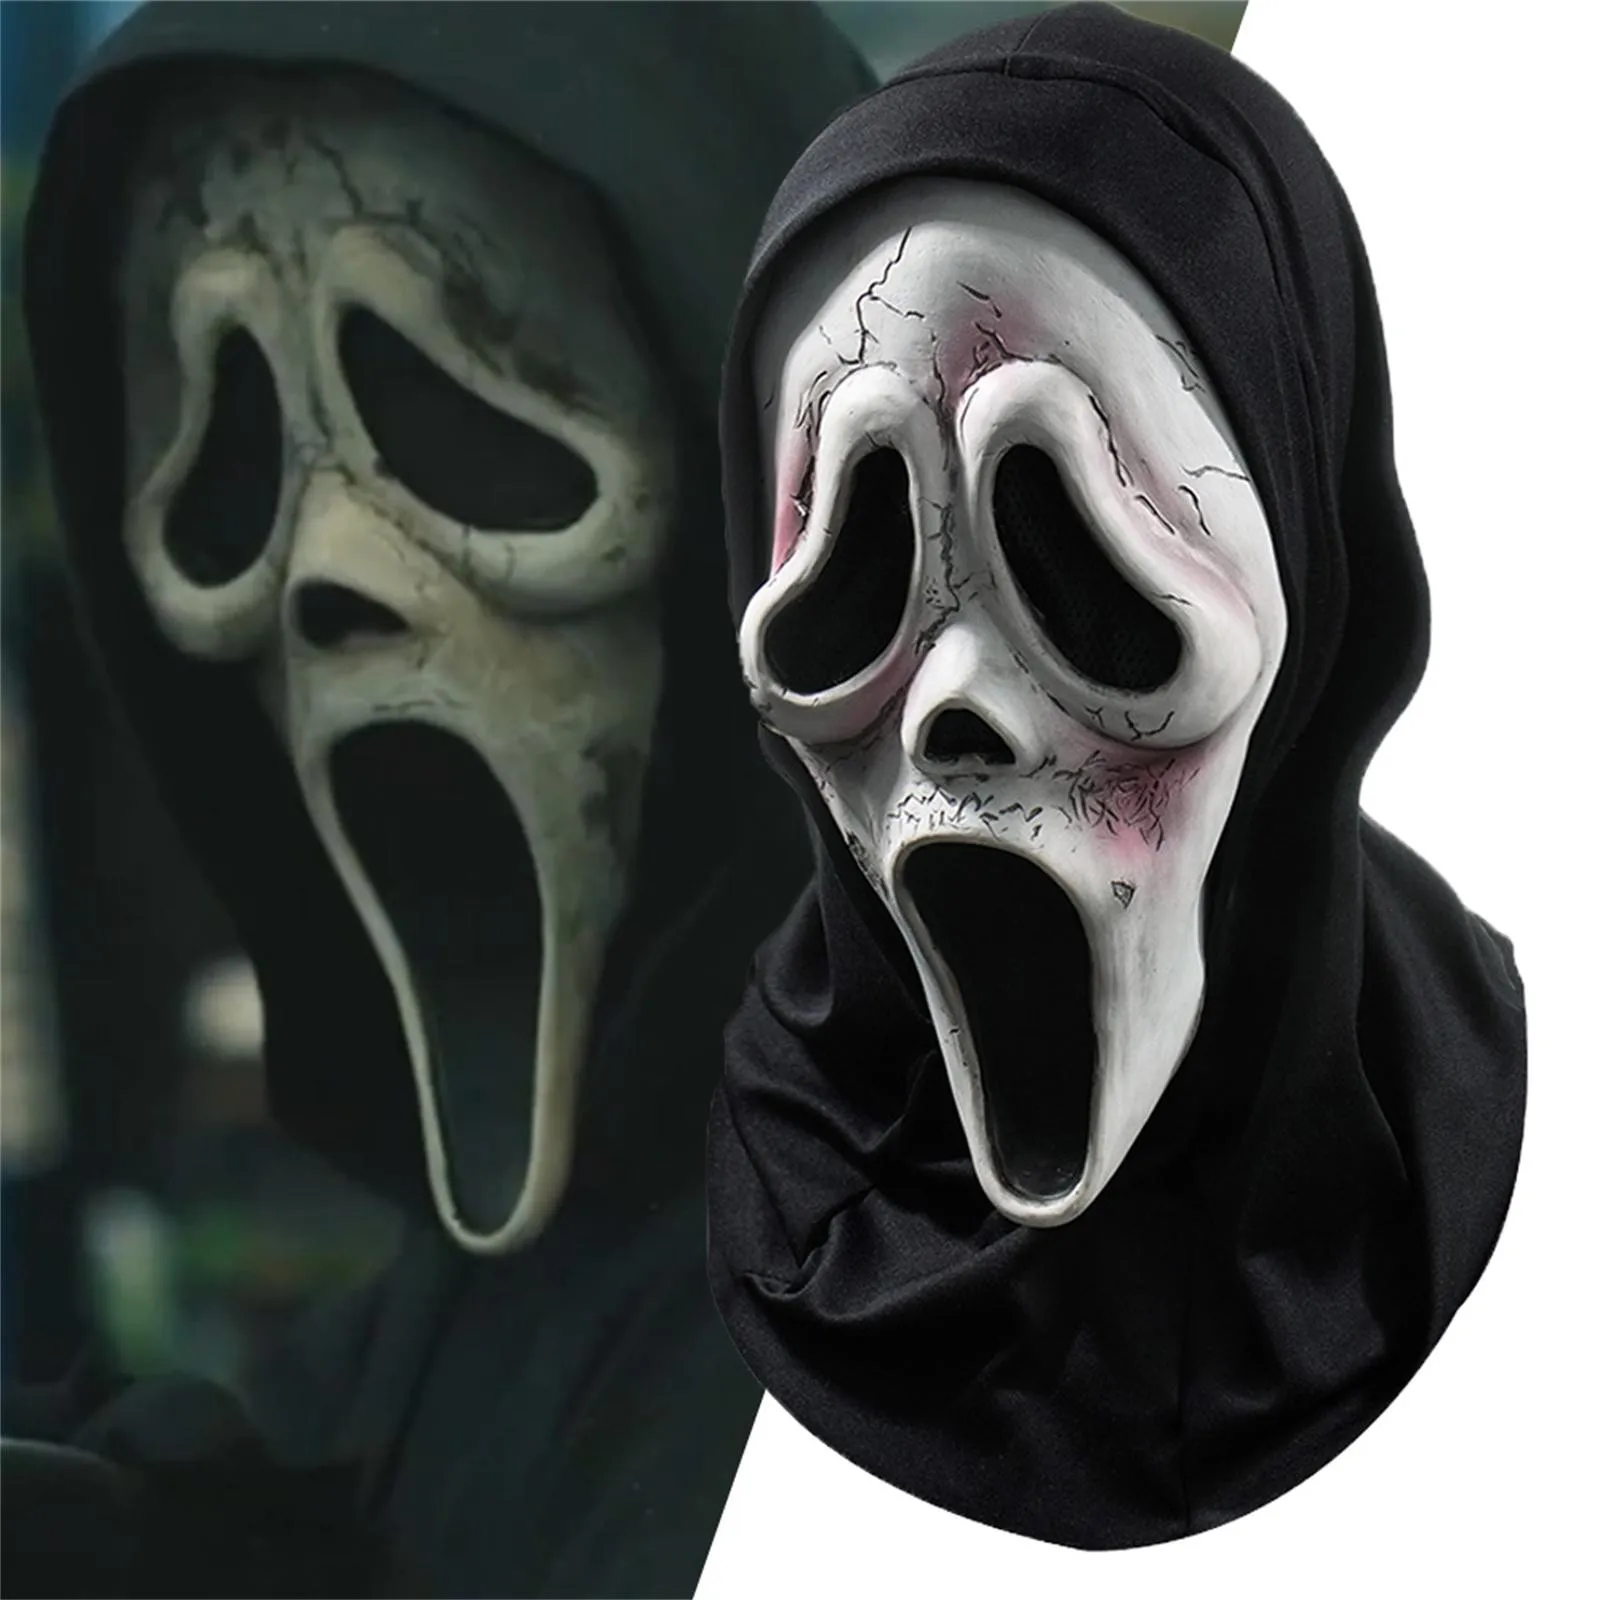 

Страшный убийца зло демон маски Ужас крик лицо Призрак дом Маска Косплей Хэллоуин карвинальное платье вечеринка костюм реквизит